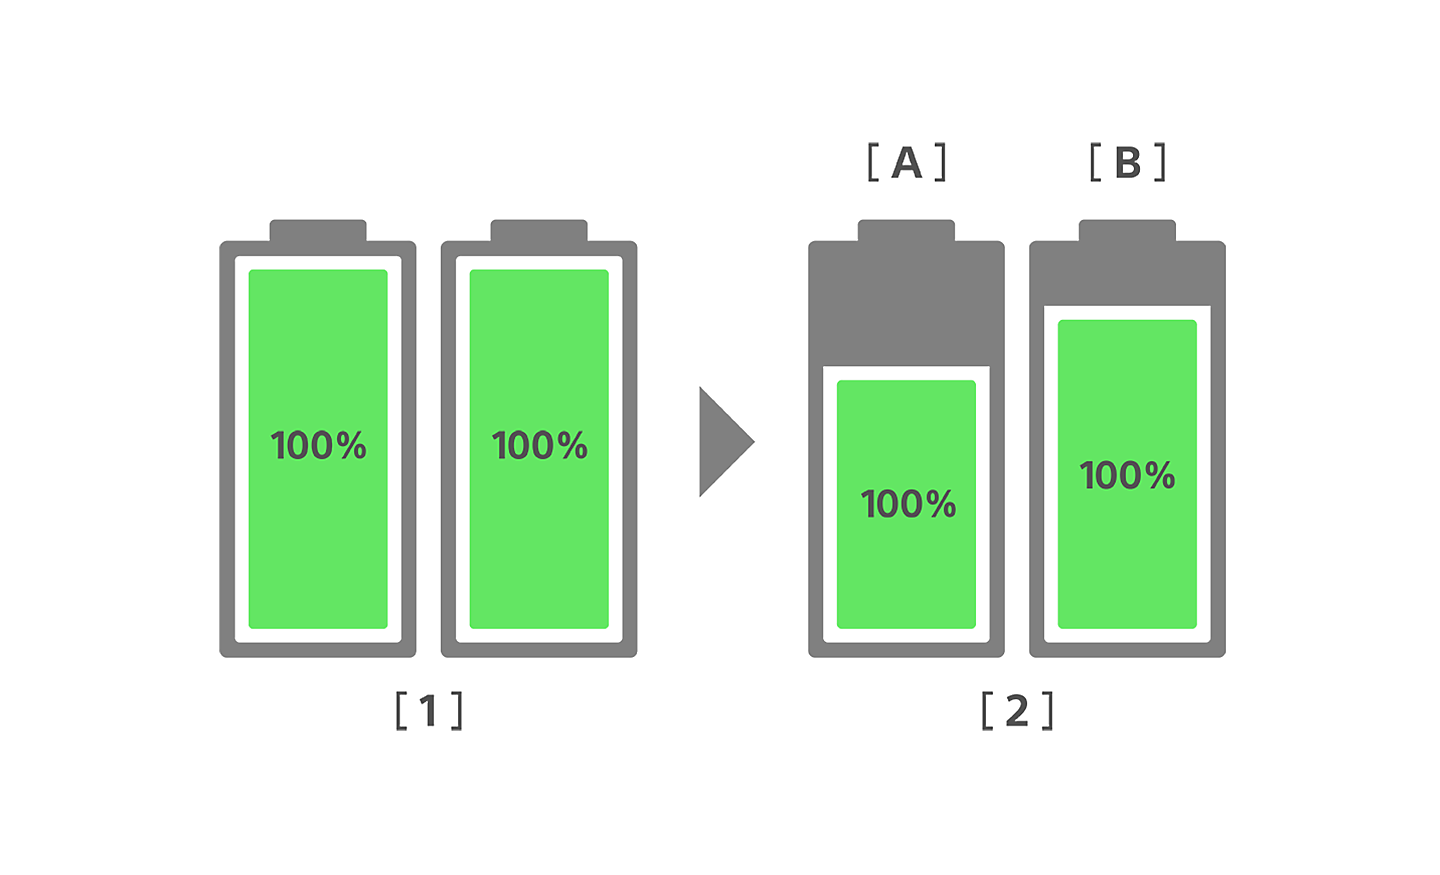 Bild som jämför batterihälsan hos en vanlig smartphone och nya Xperia före och efter tre års användning